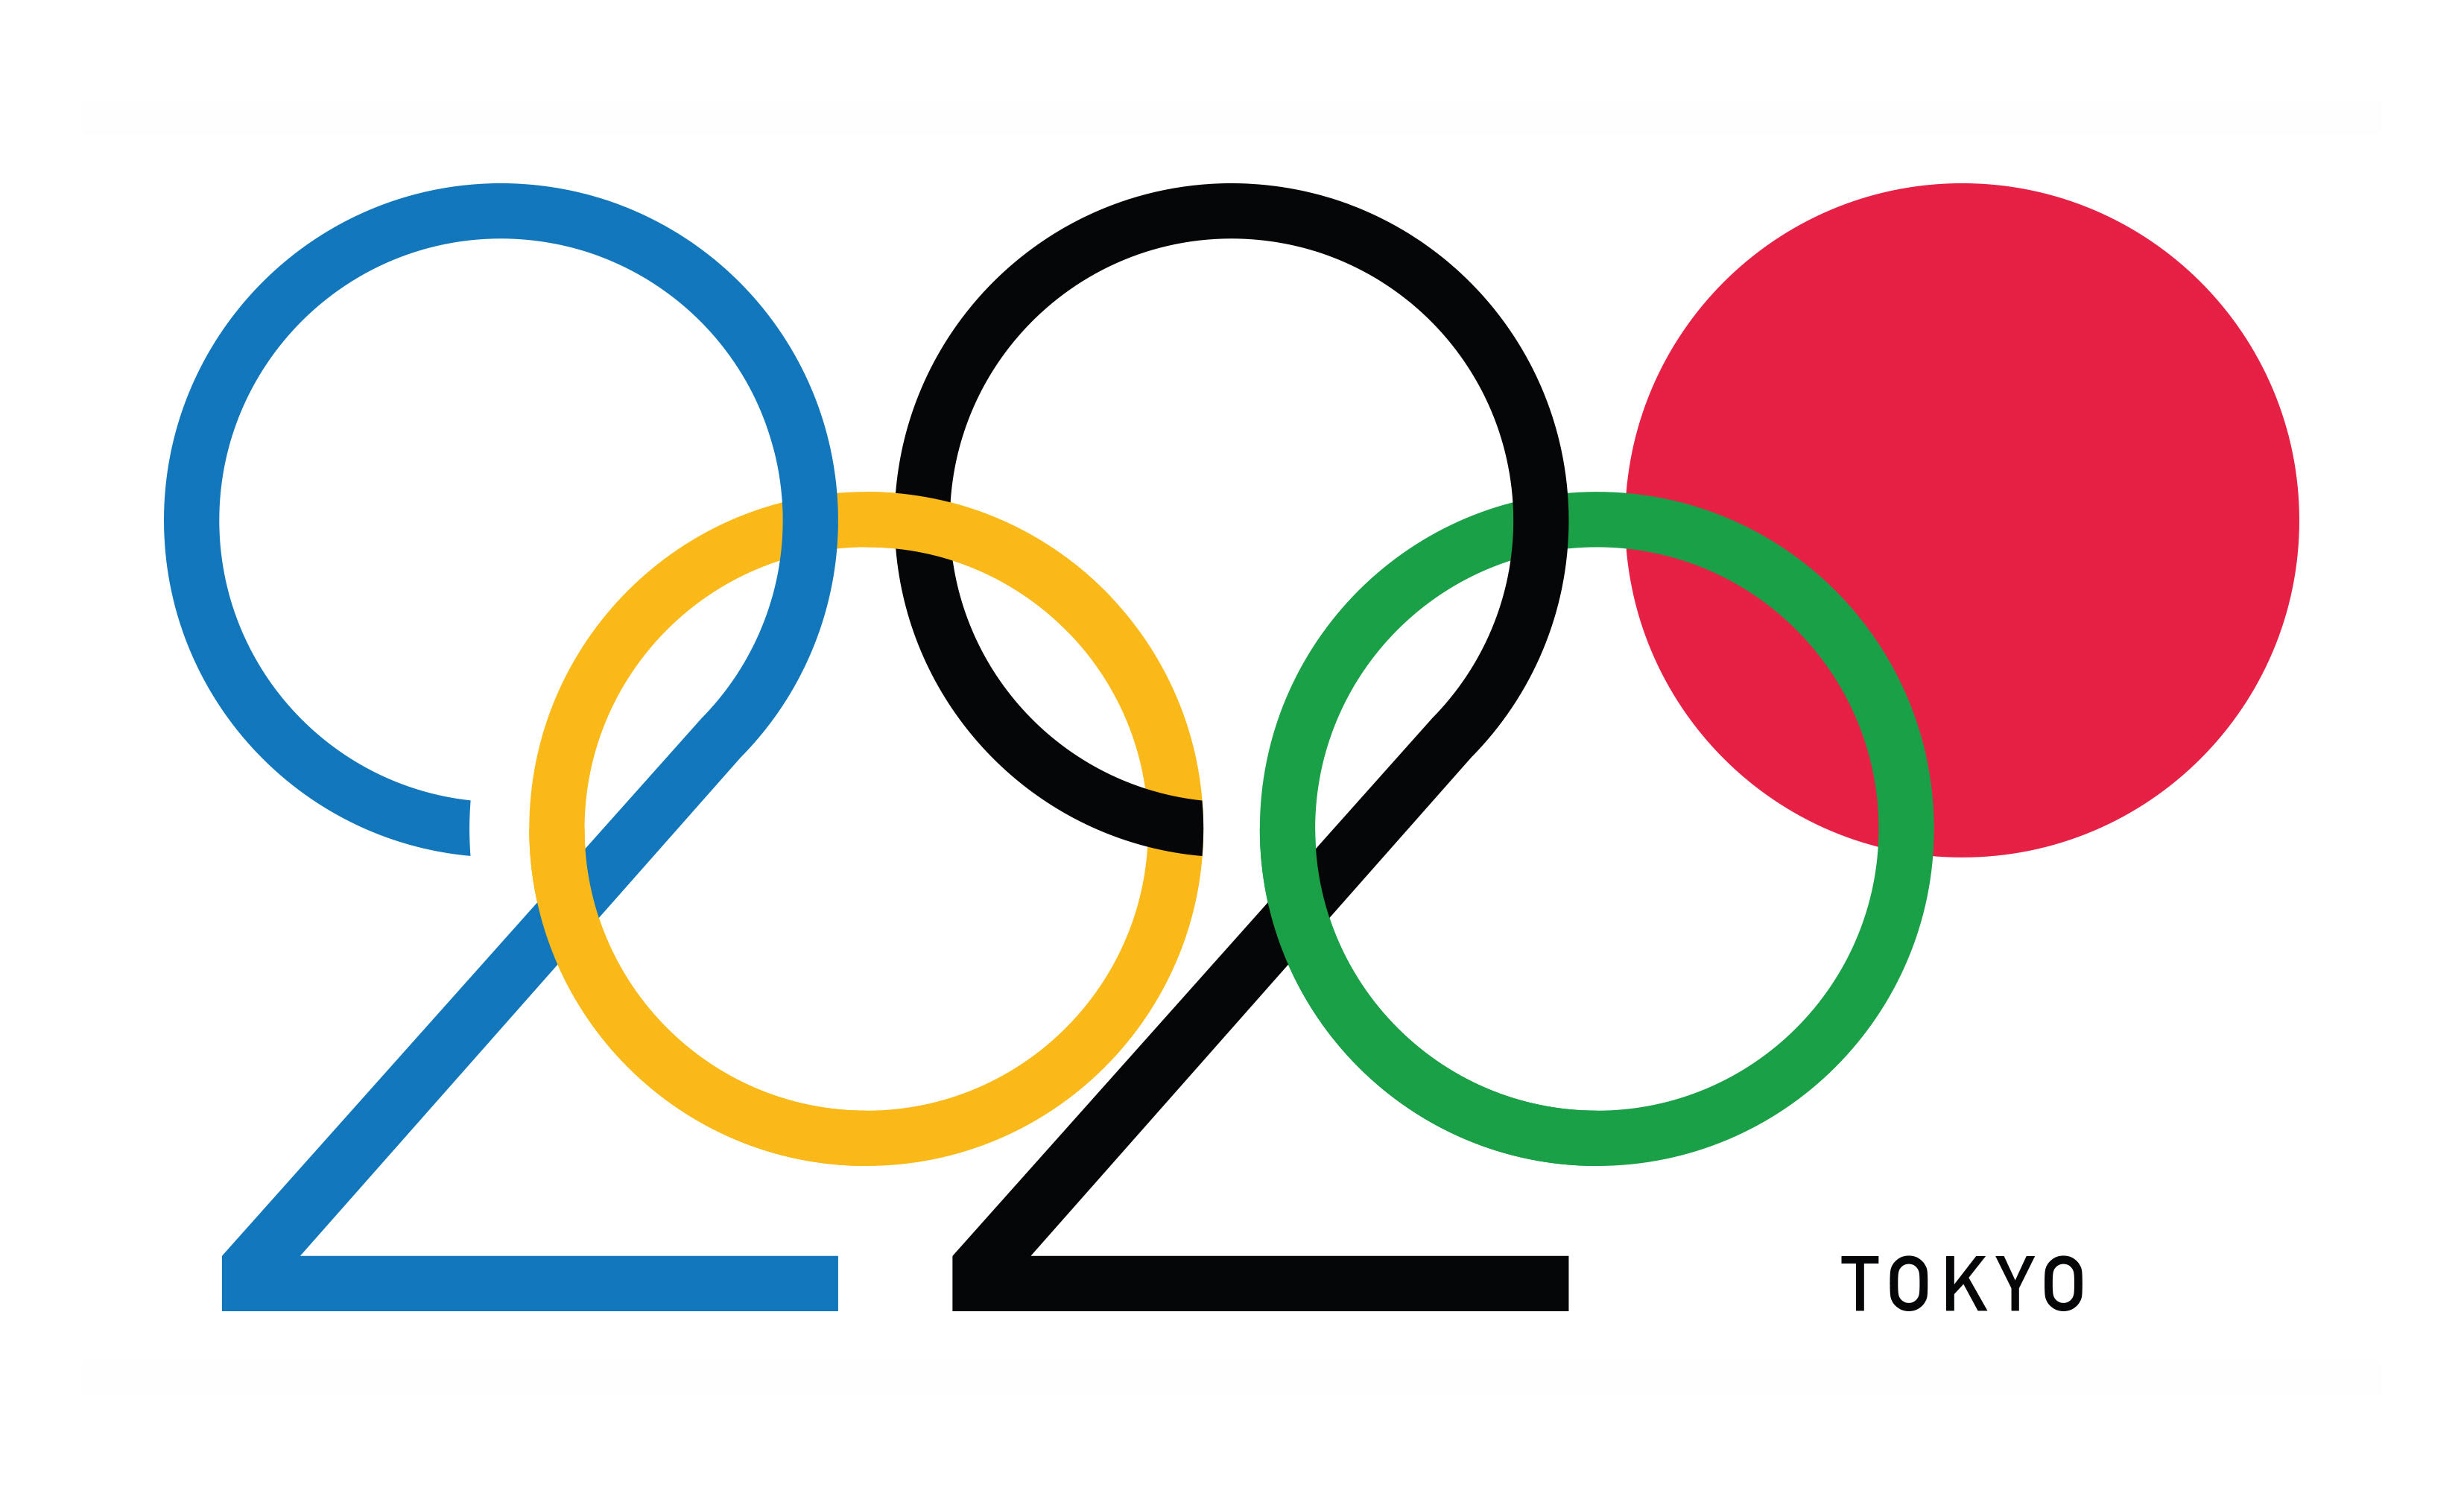 Tokyo 2020 olympics